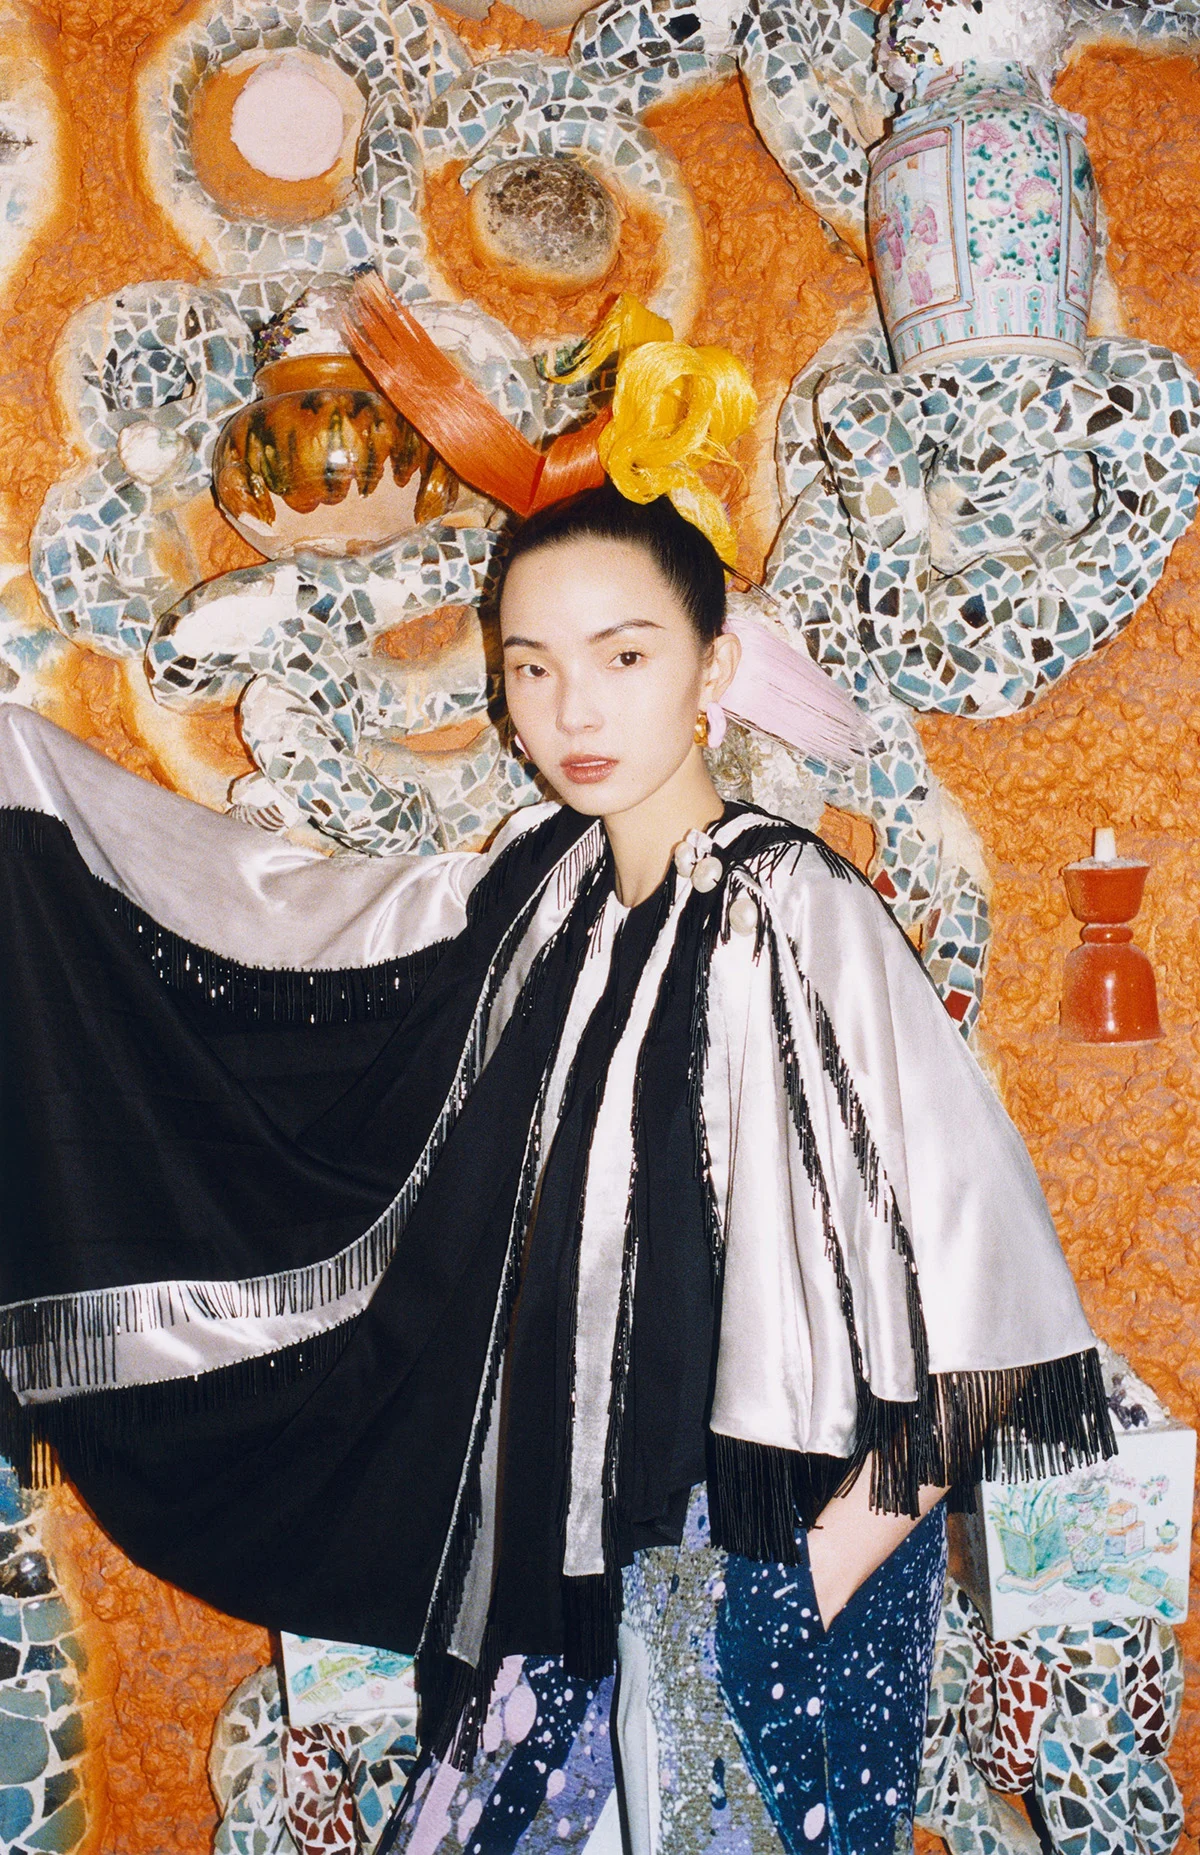 Xiao Wen Ju and Xie Chaoyu by Xiangyu Liu for Vogue Global March 2022